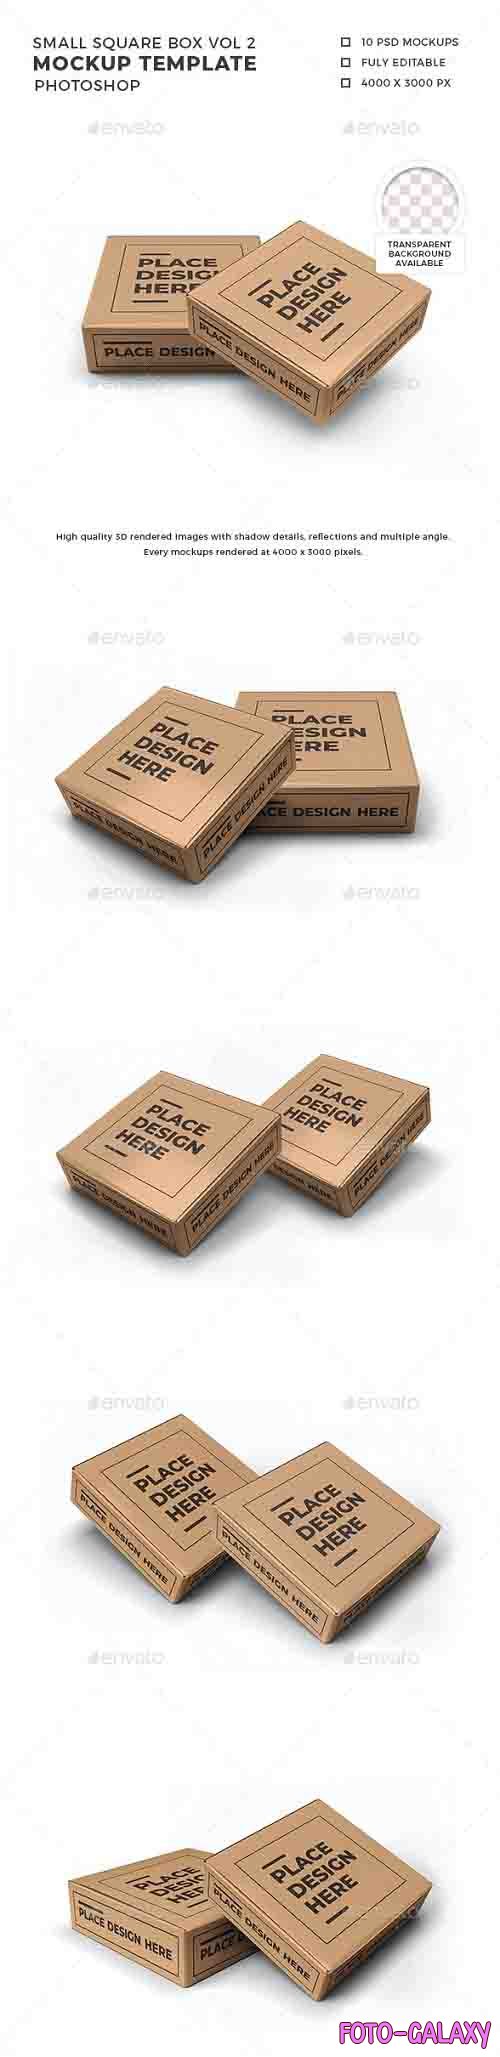 Small Square Box Mockup Template Vol 2 - 32570172